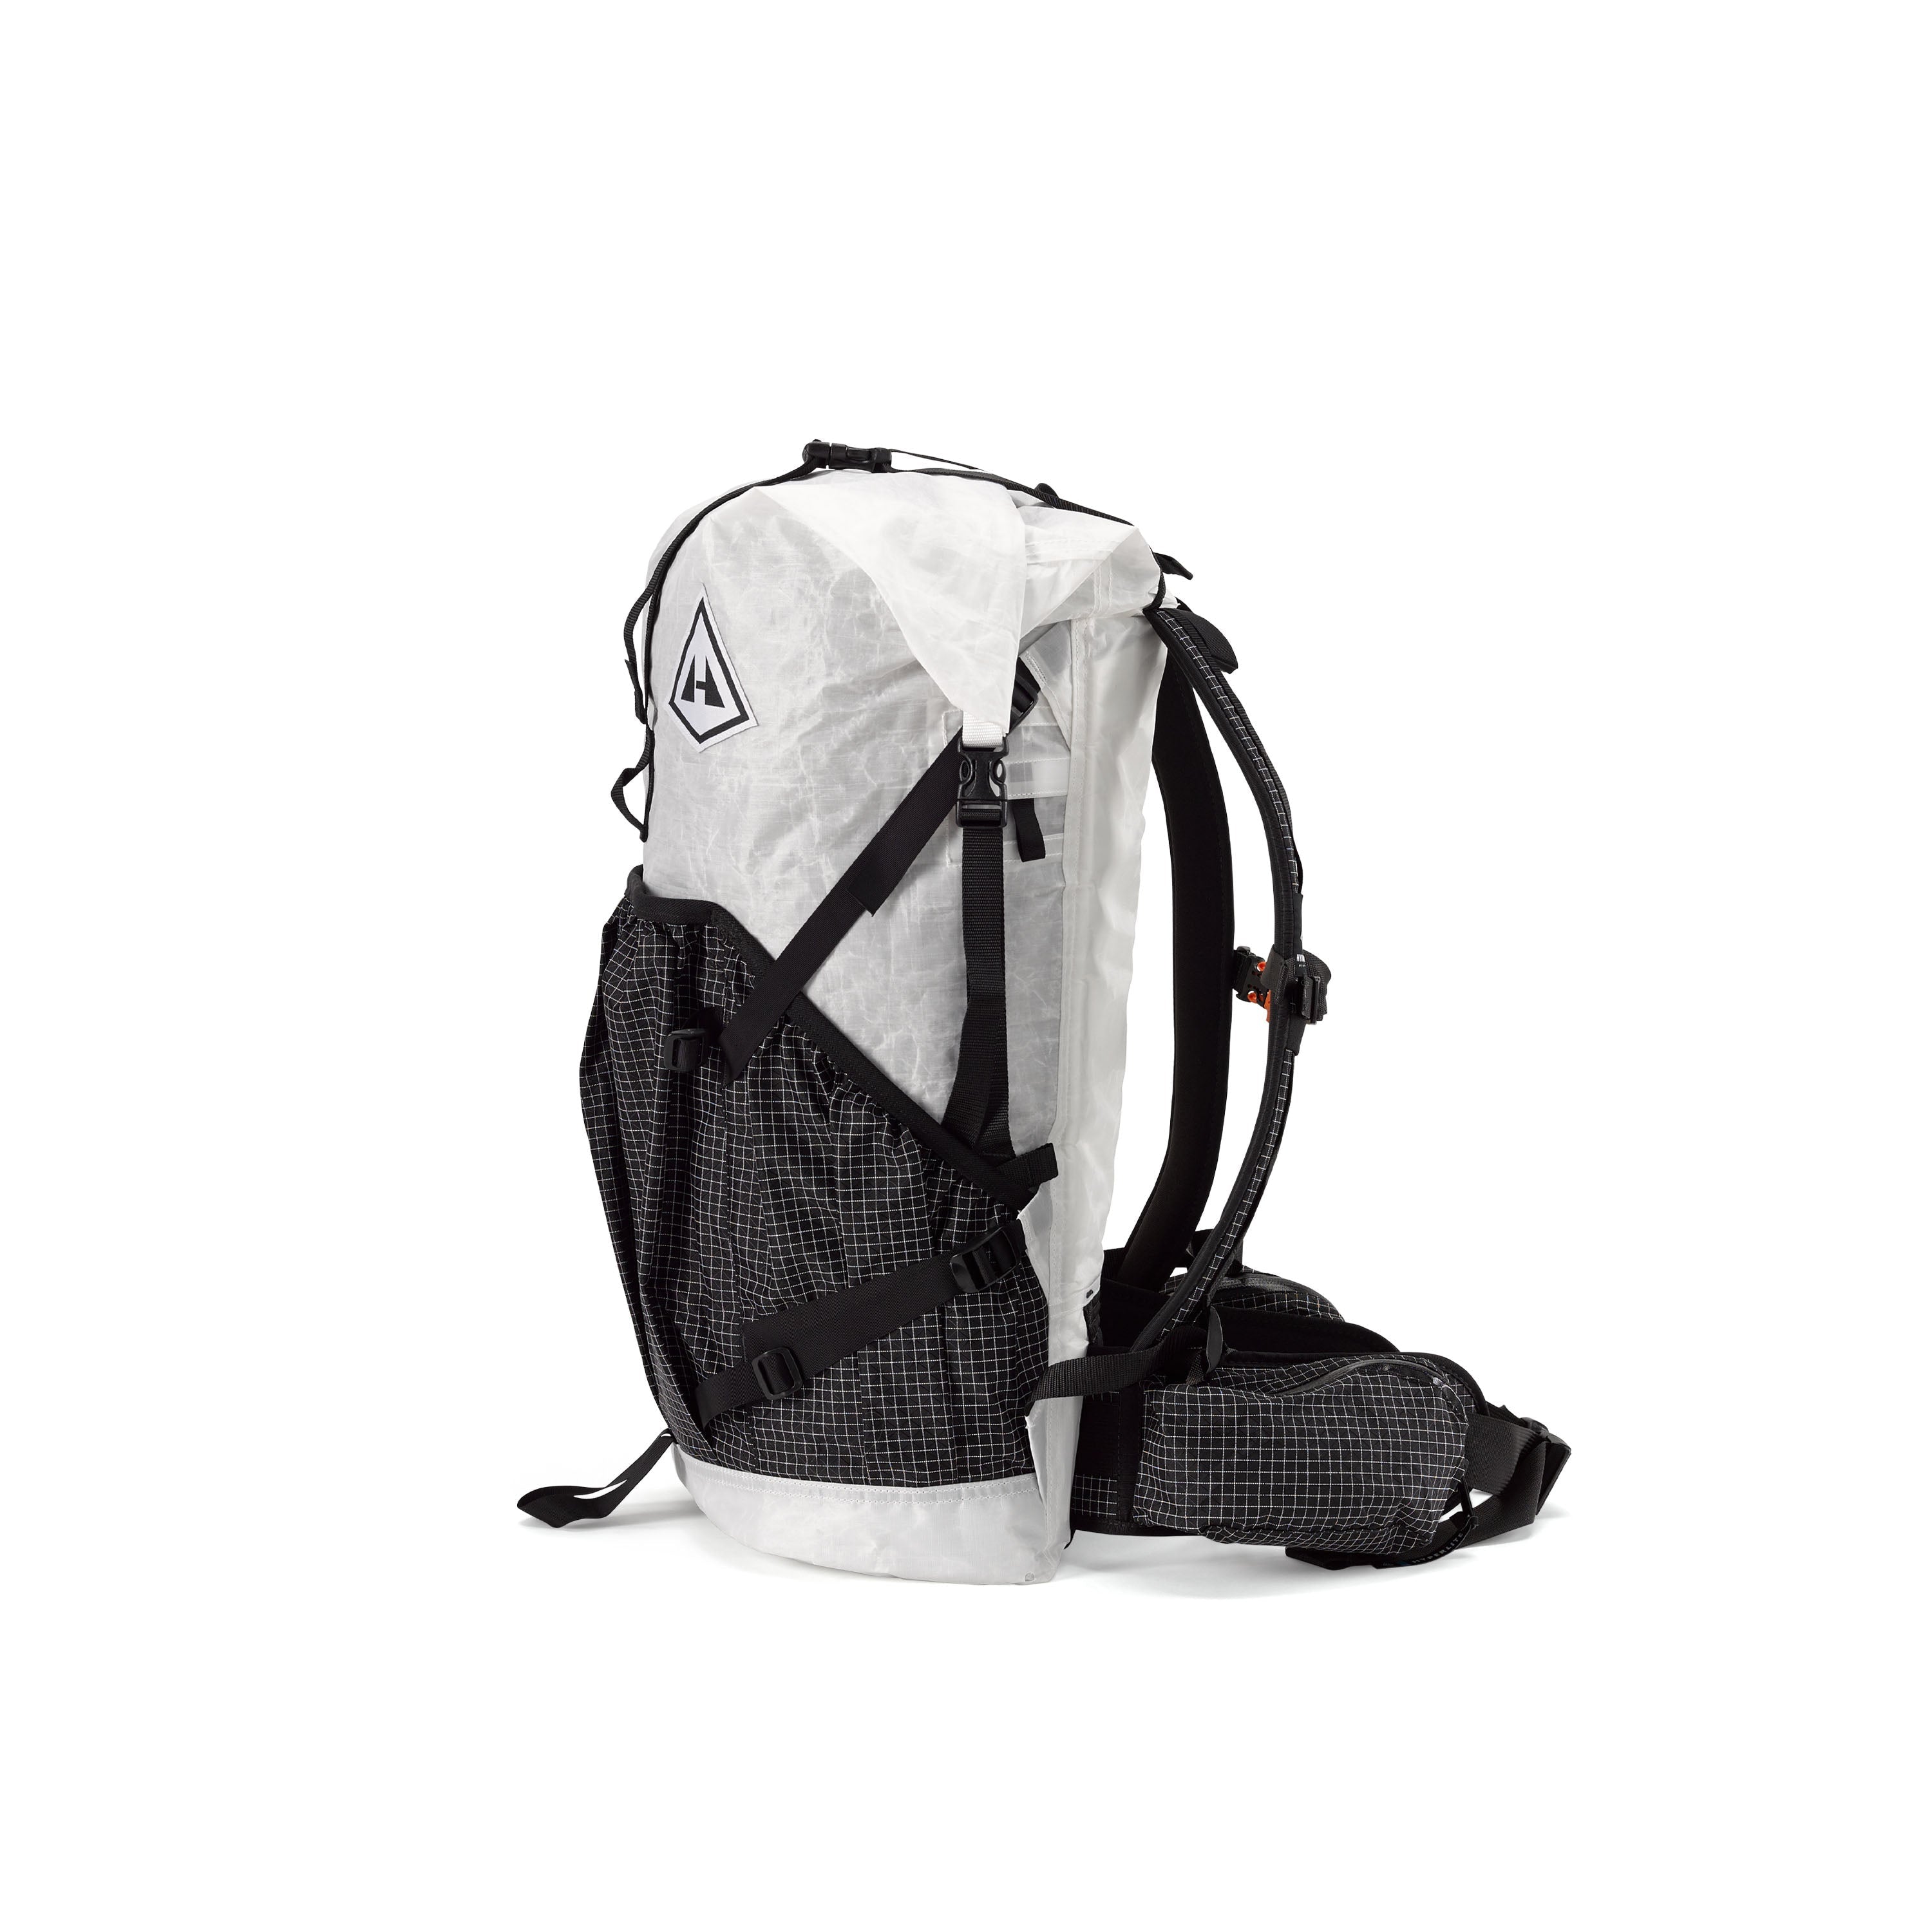 Hyperlite Mountain Gear Southwest 40 | 40L Ultralight Backpack 